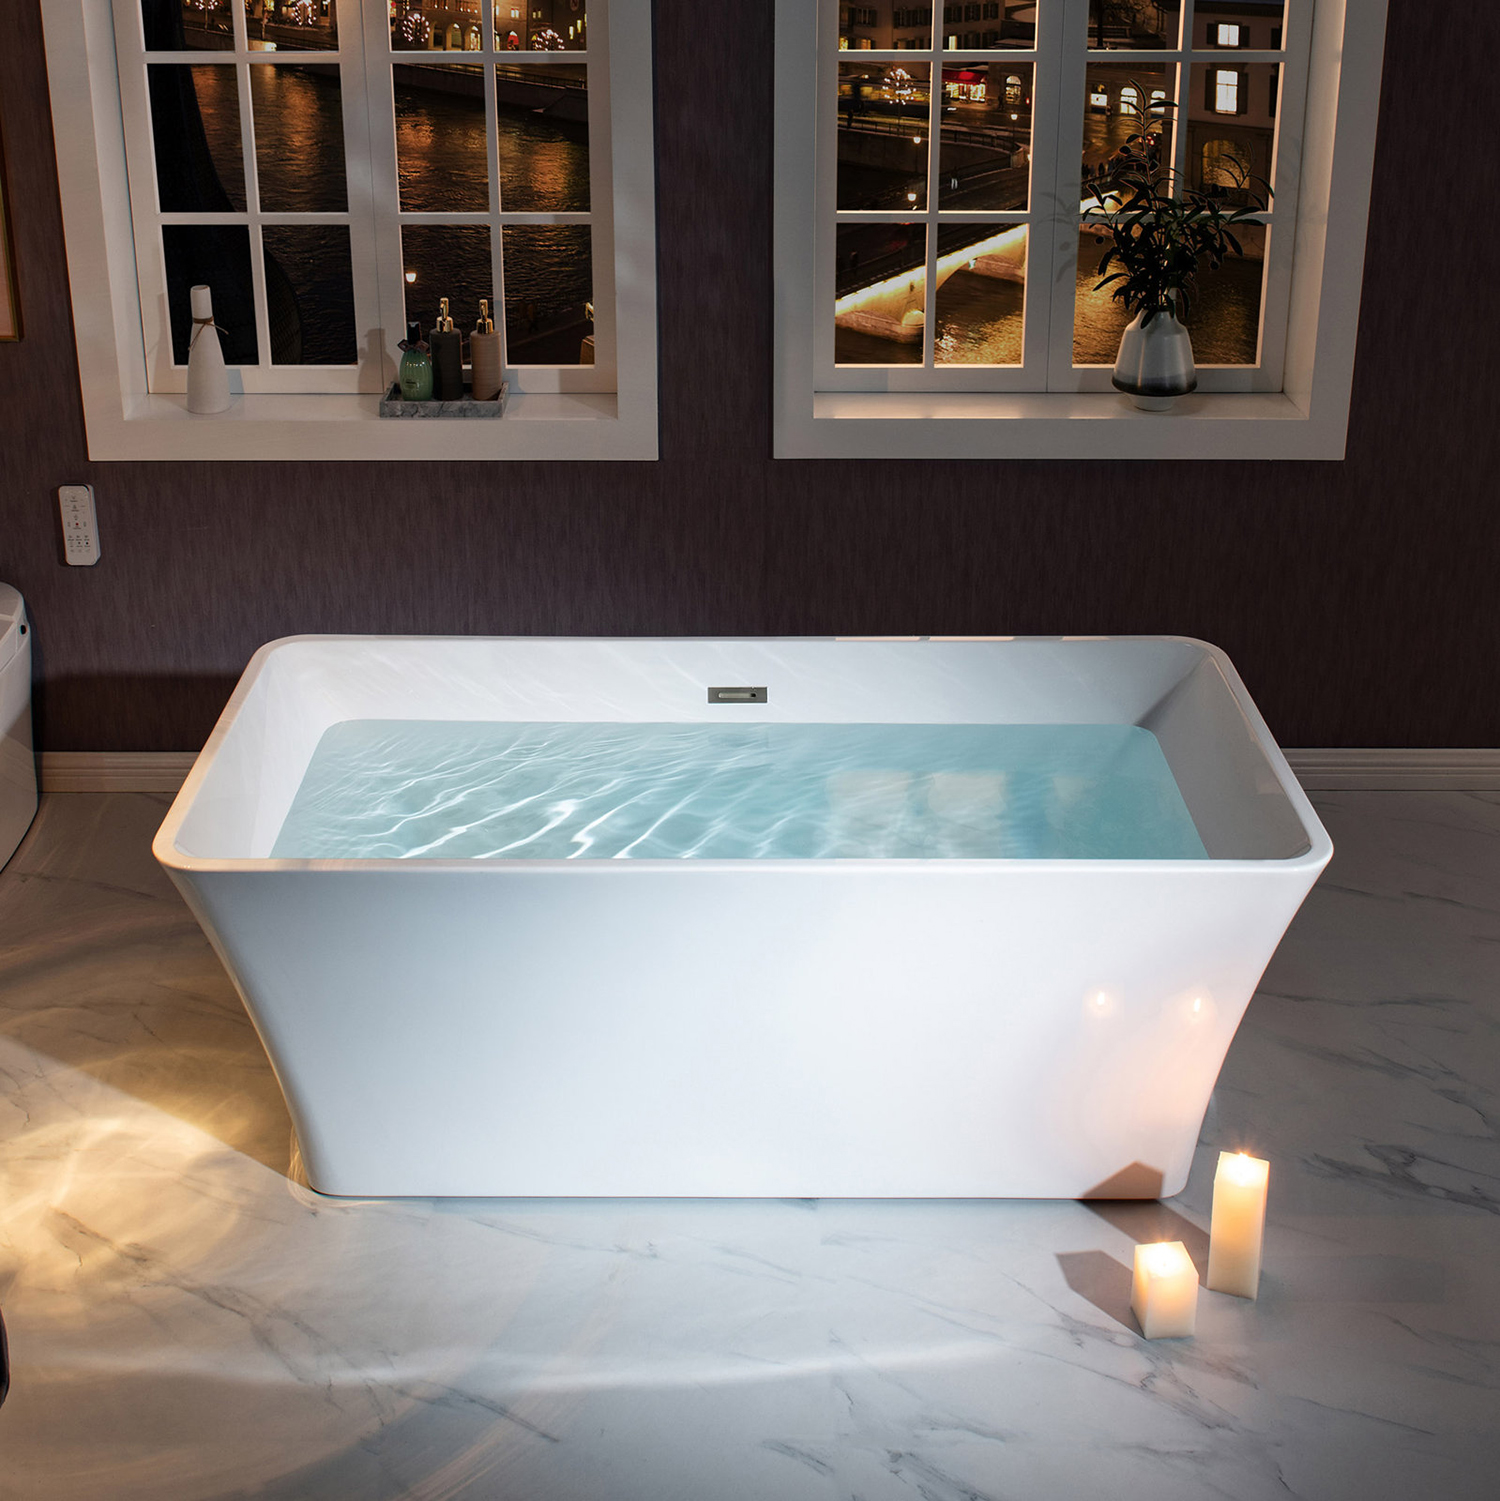 Bañera rectangular independiente de acrílico moderna, bañera de hidromasaje independiente de fibra de vidrio con fondo plano de 67 pulgadas